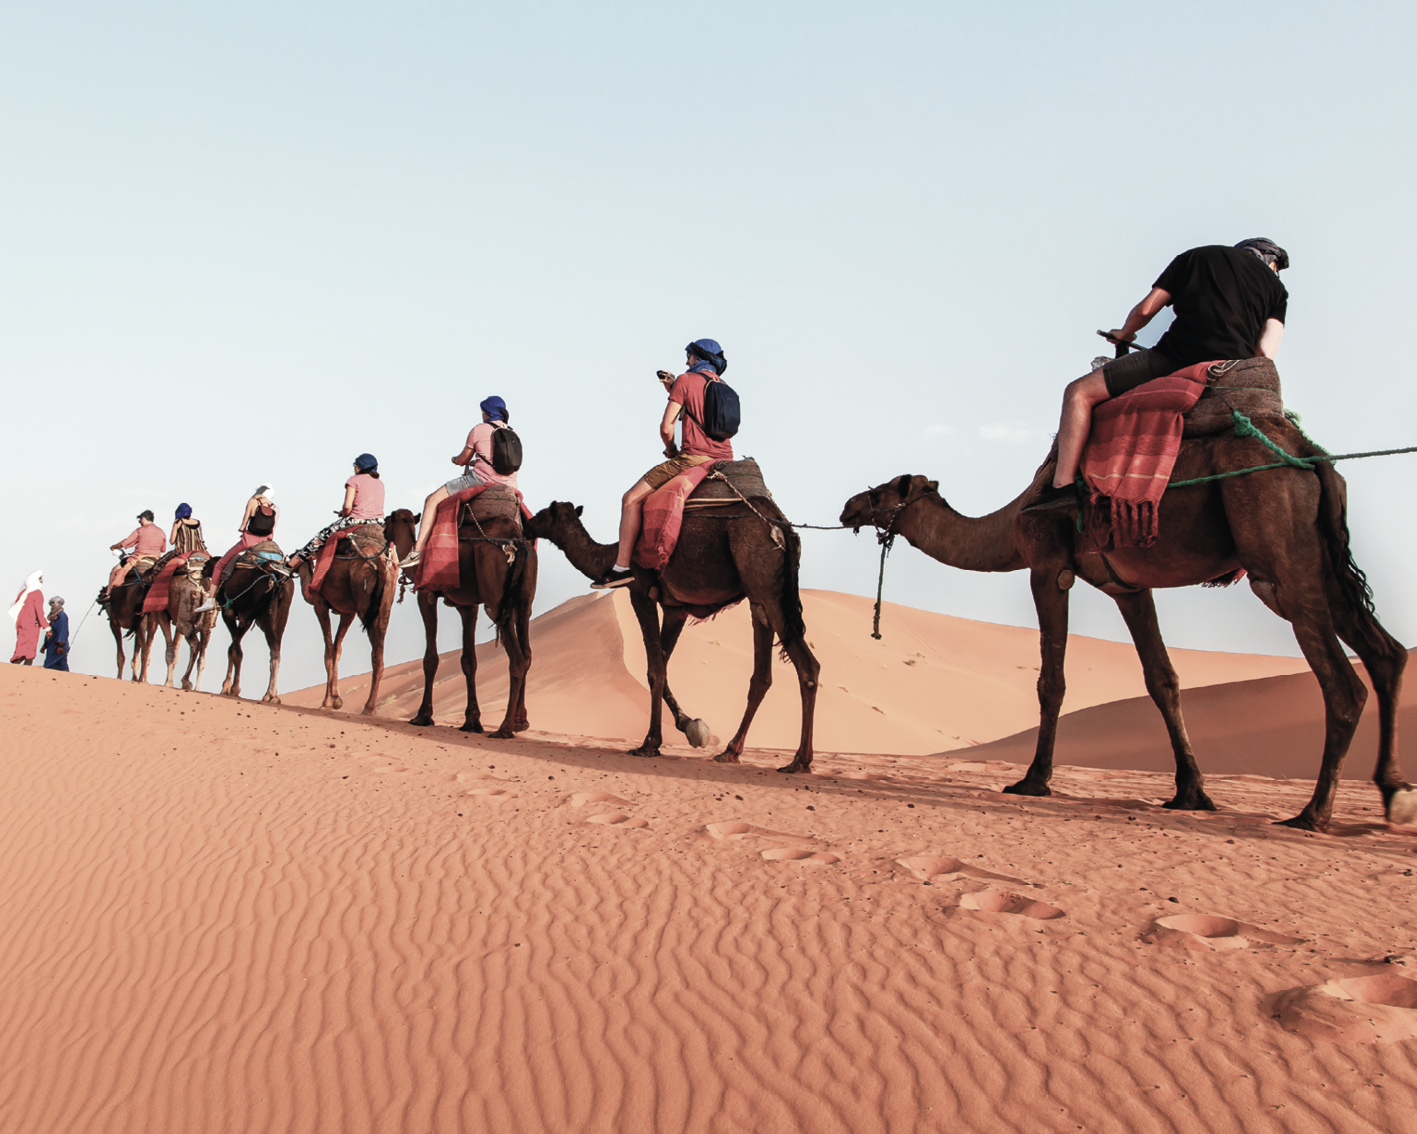 Fotografia. Fila de pessoas com camisetas, bermudas e mochilas, usando lenços na cabeça, montadas em camelos, que andam pelo deserto.